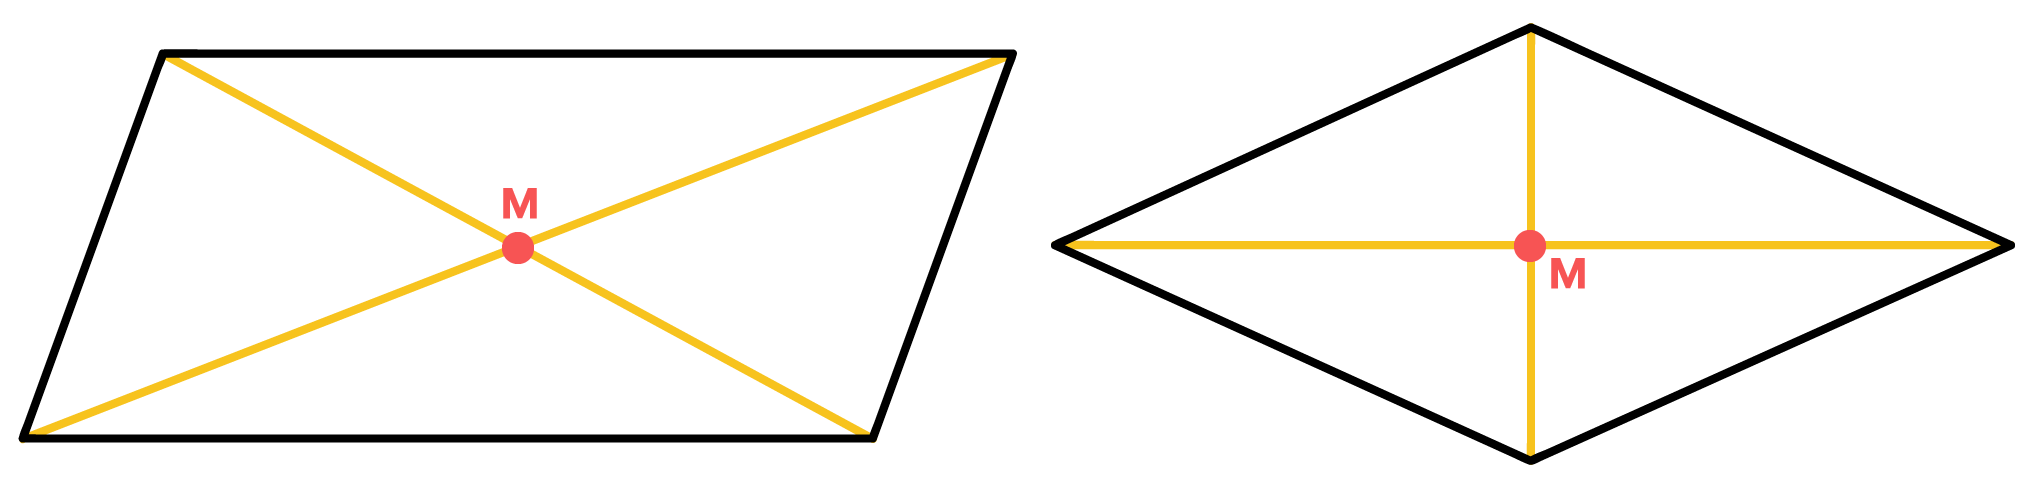 diagonais do losango e do paralelogramo se cruzam no ponto M